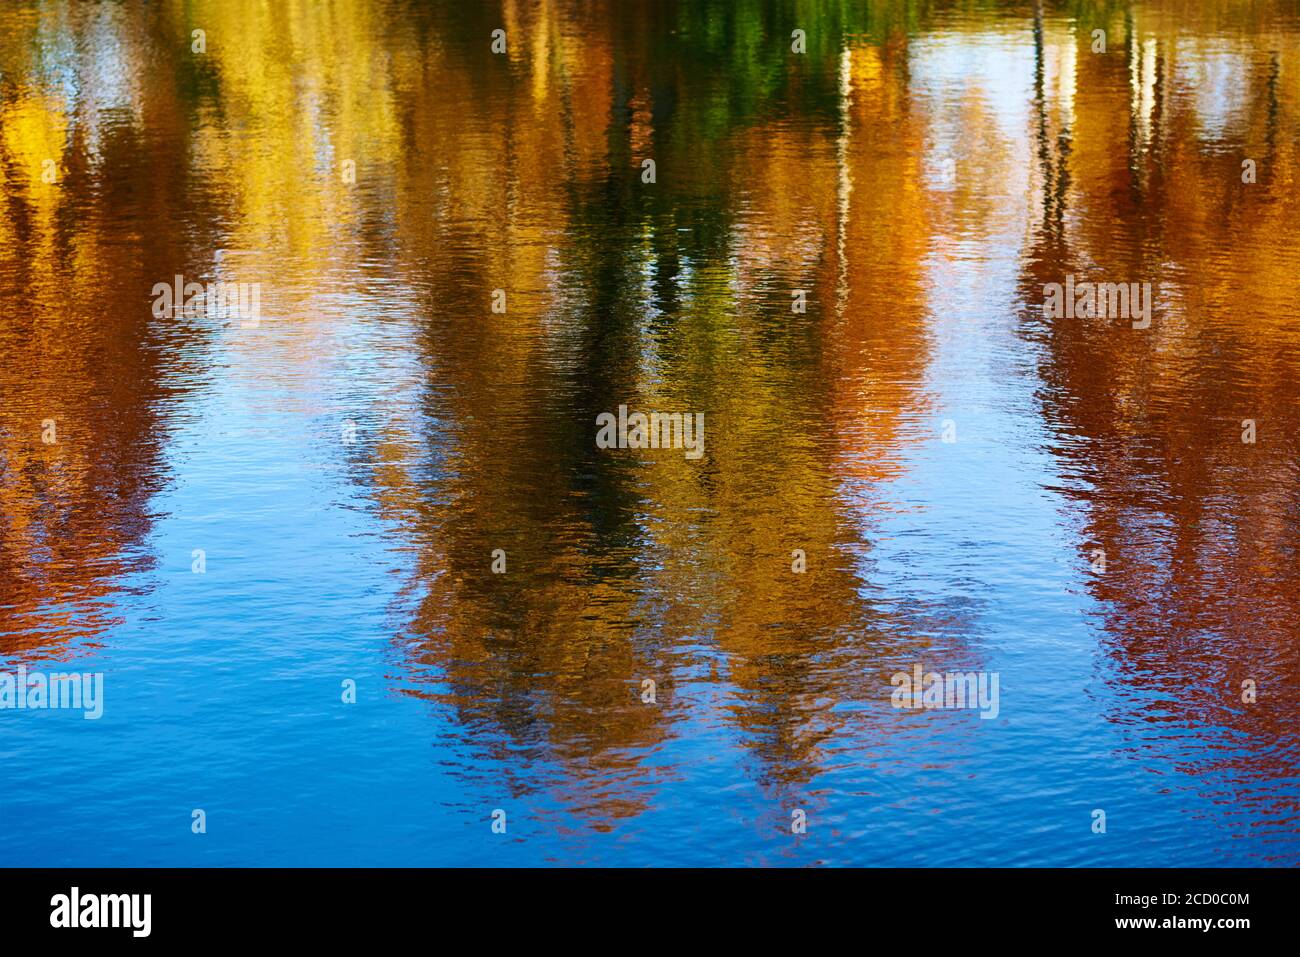 Sfondo autunno. Riflesso di alberi d'autunno offuscati e colorati nel fiume Foto Stock